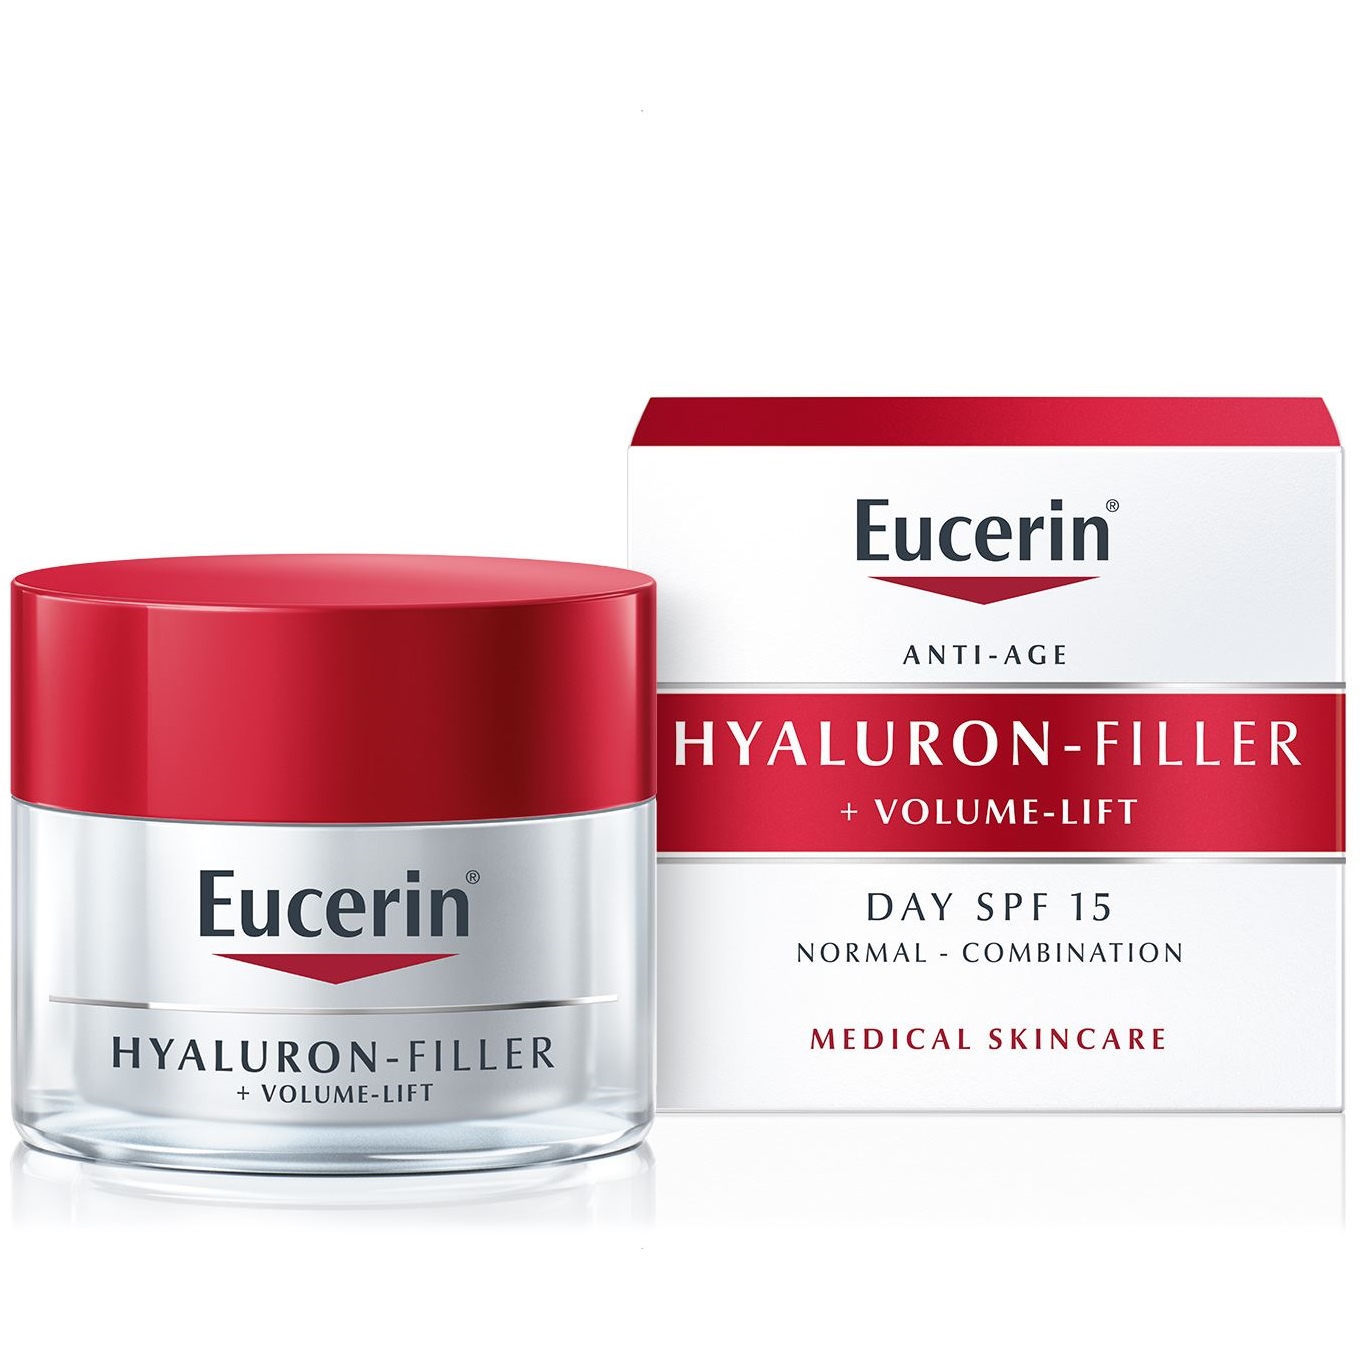 Eucerin Hyaluron-Filler + Volume-Lift Дневной крем для восстановления контура лица для нормальной и комбинированной кожи лица с SPF 15
